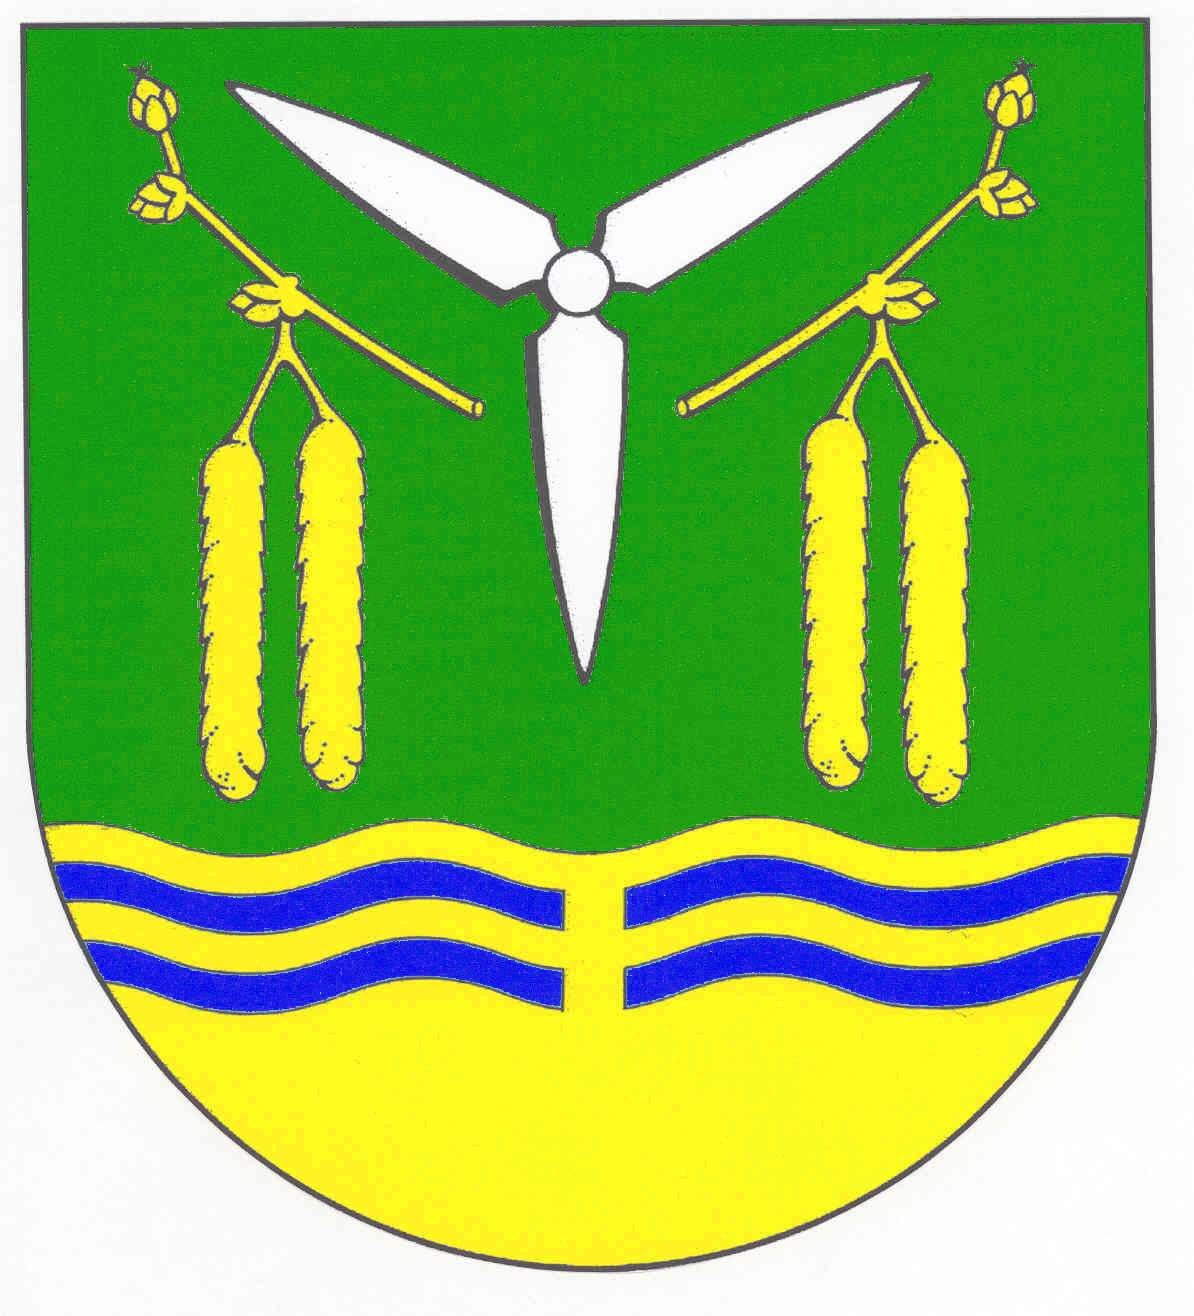 Wappen von Puls (Holstein)/Arms (crest) of Puls (Holstein)